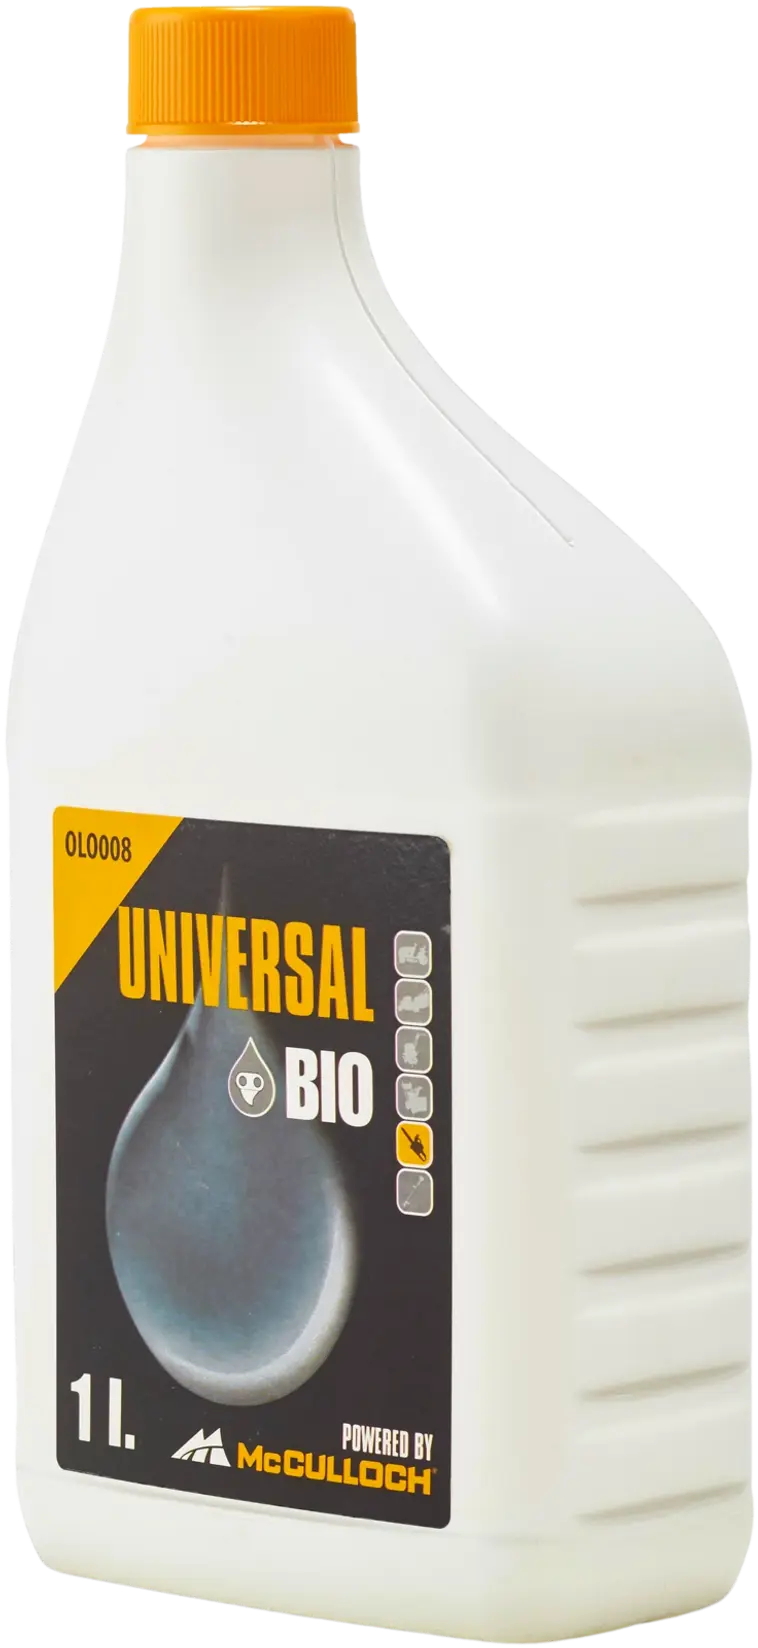 Teräketjuöljy Universal Bio 1l Olo008